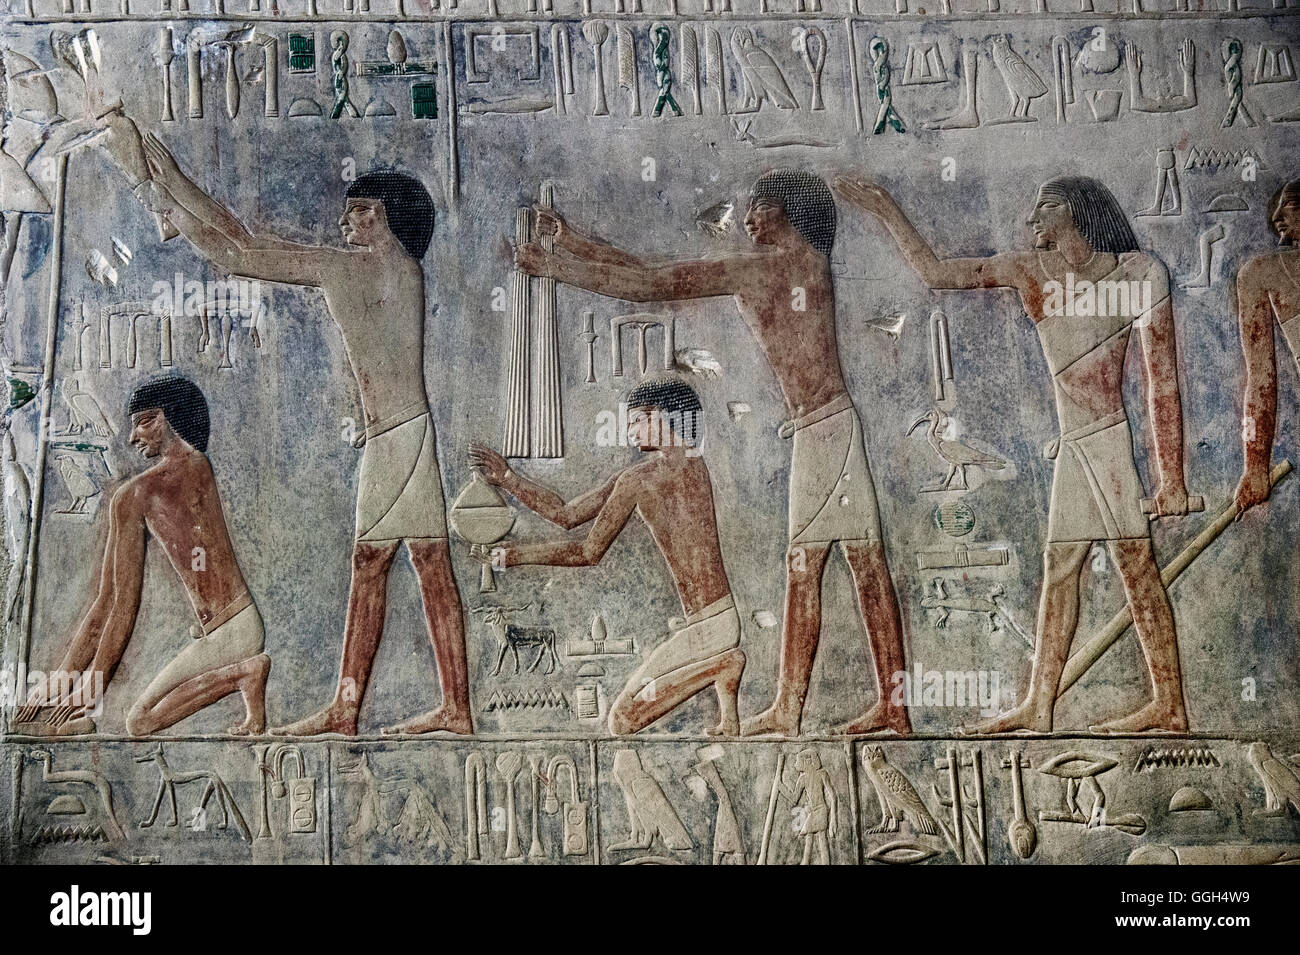 L'Egypte, Saqqara, reliefs de la tombe de Ptahhotep. Plusieurs personnages à l'épargne. Banque D'Images